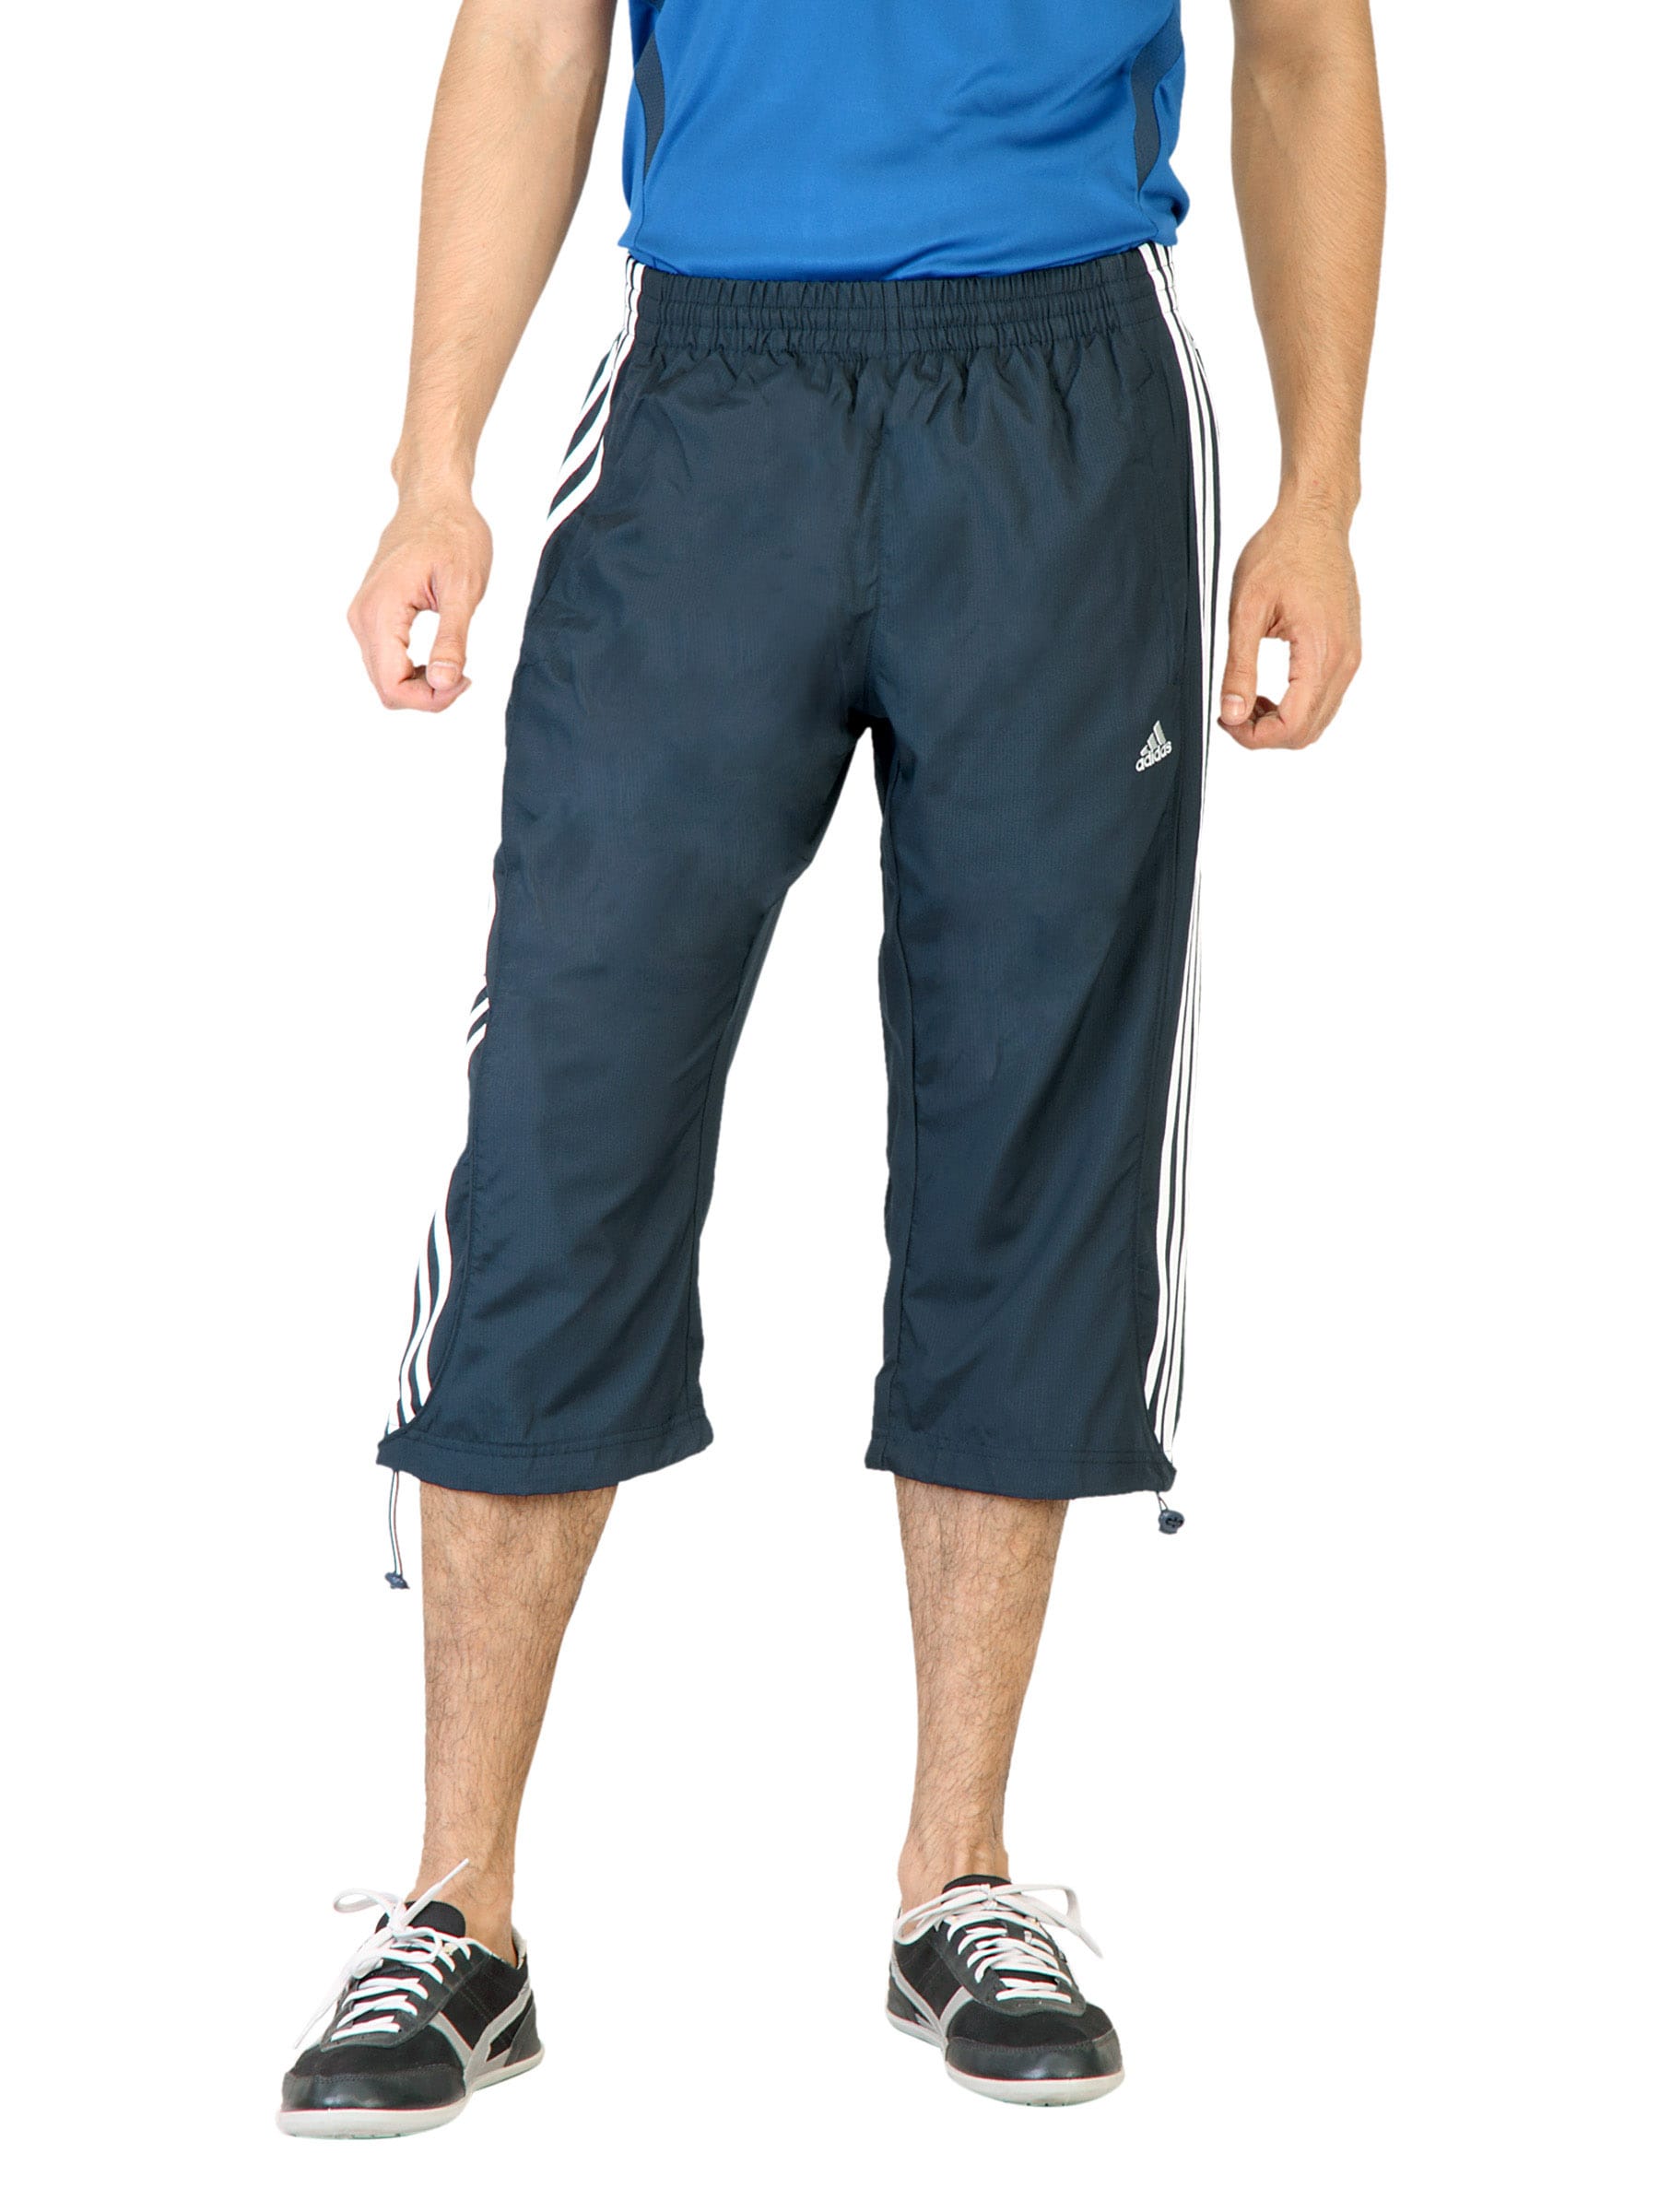 ADIDAS Men Solid Navy Blue Shorts